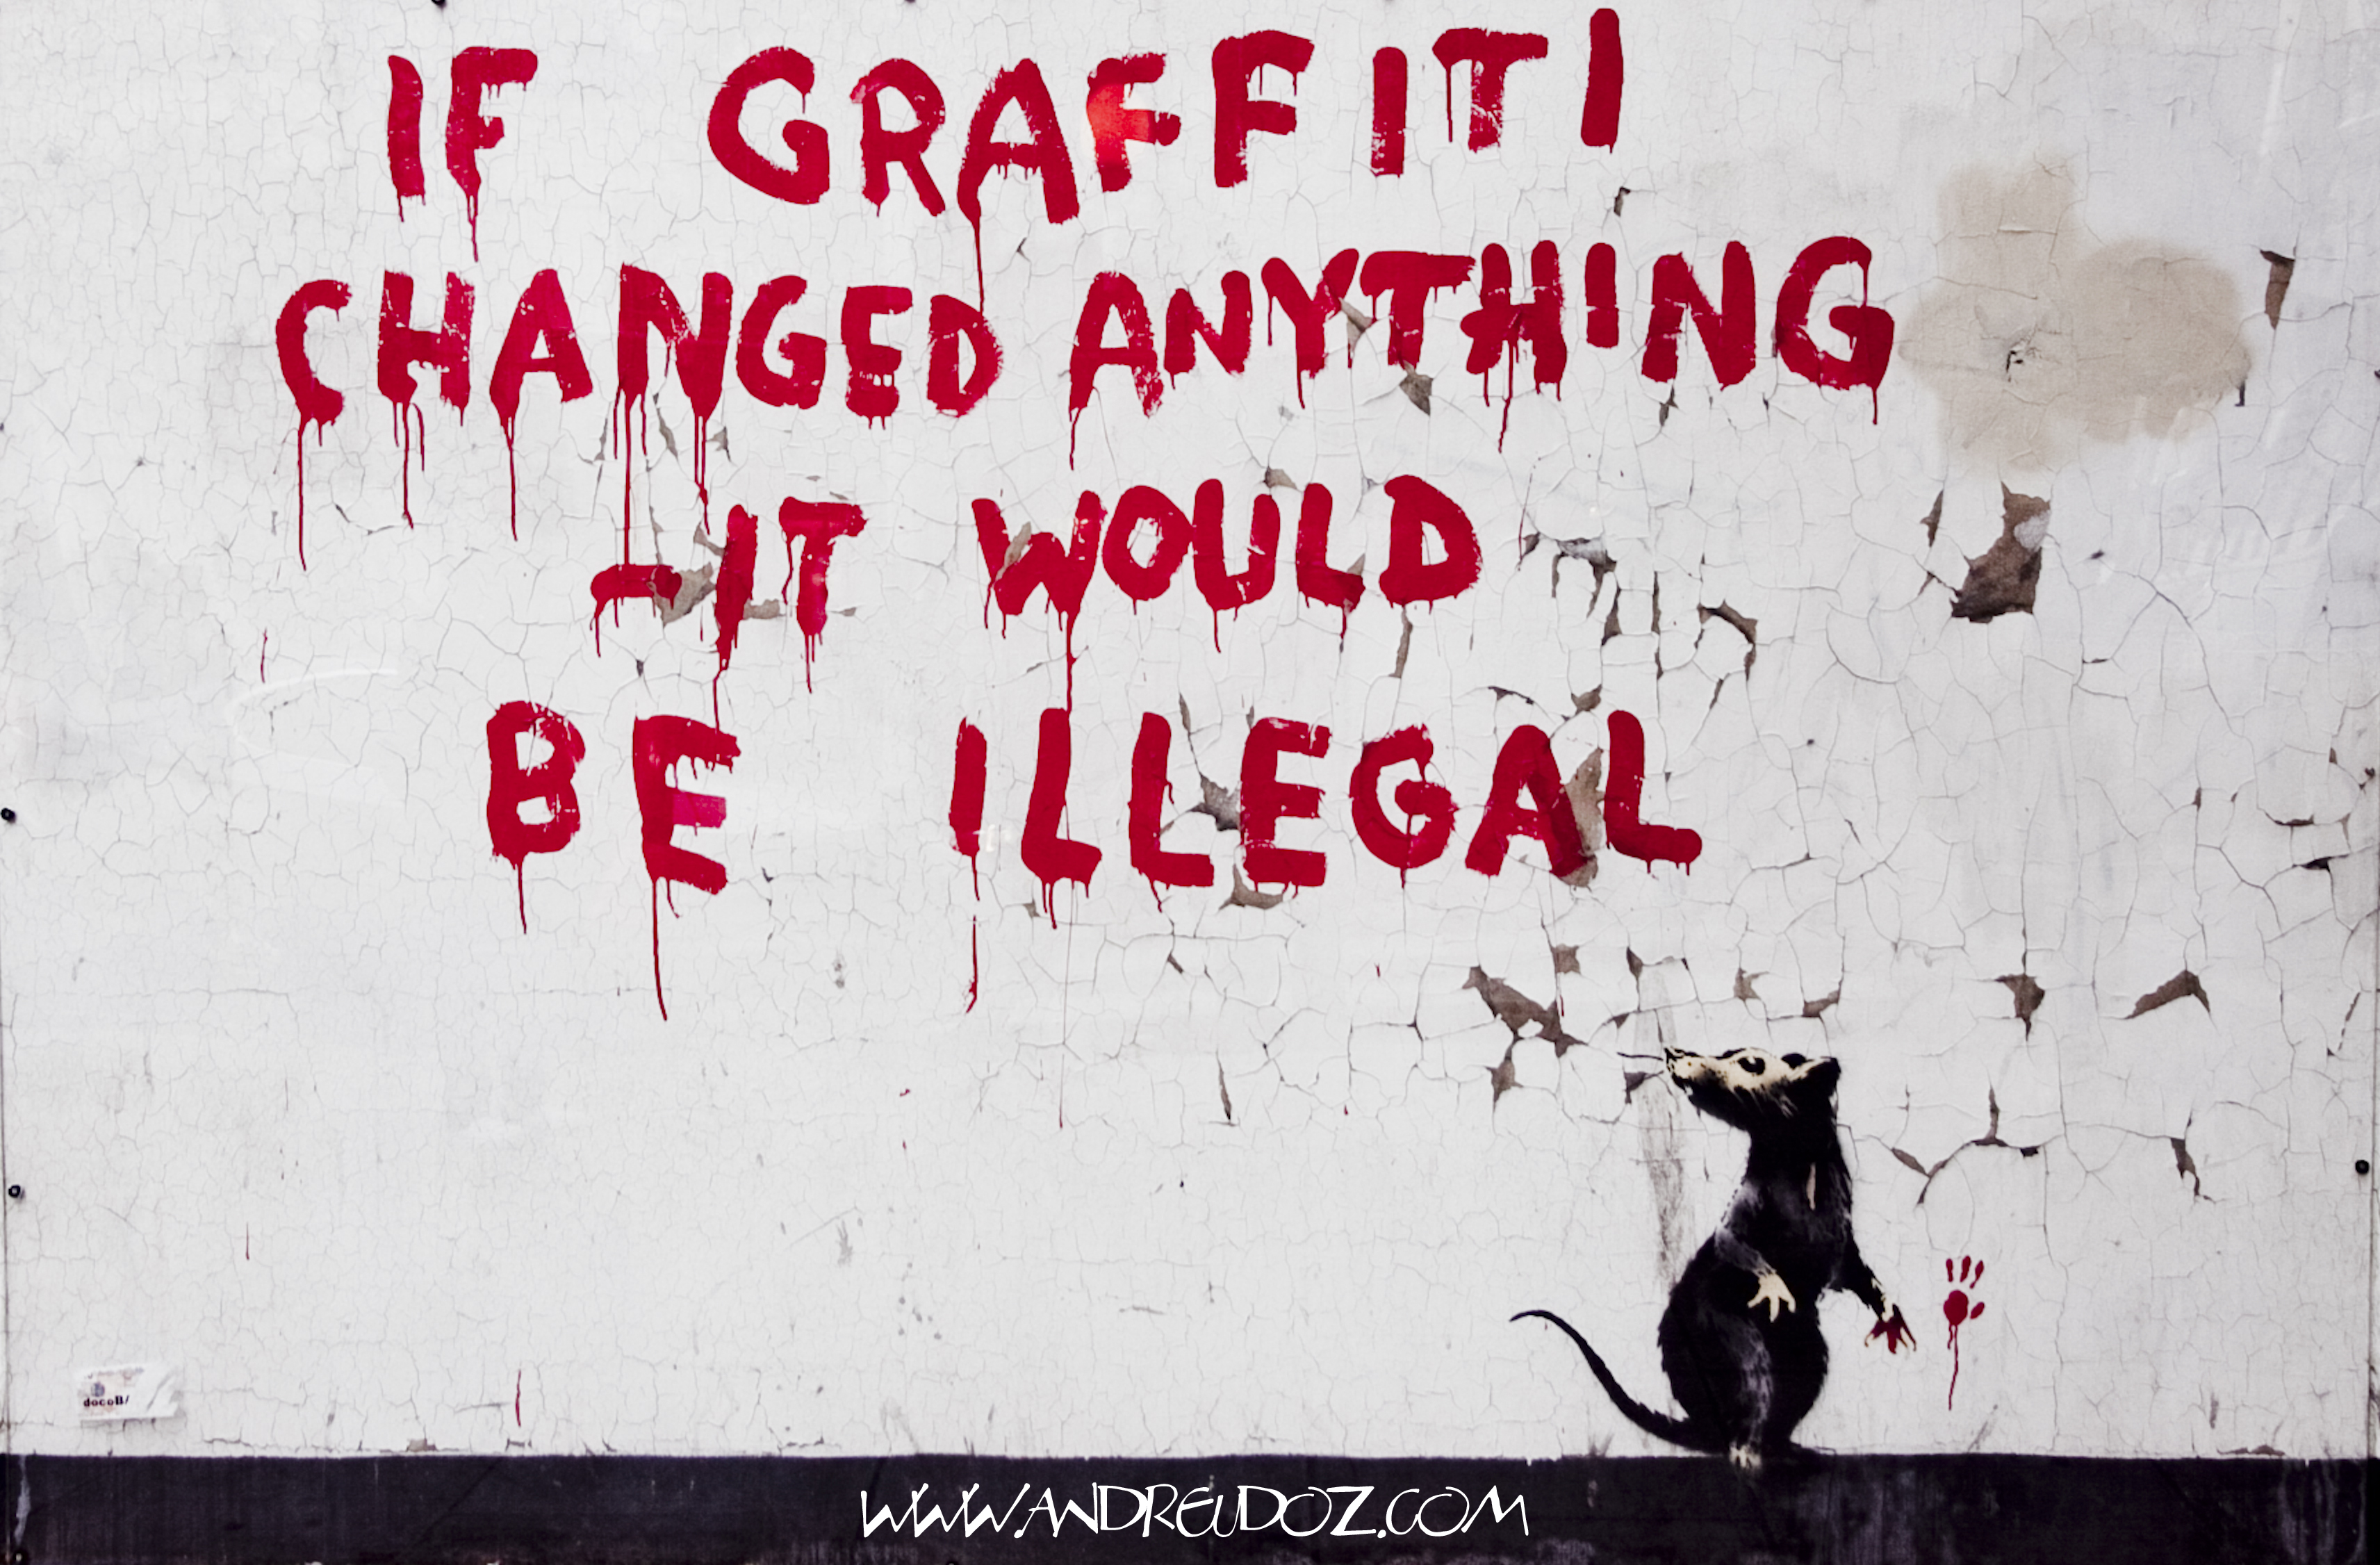 Ha a graffiti bármit is megváltoztatott volna, illegális lenne